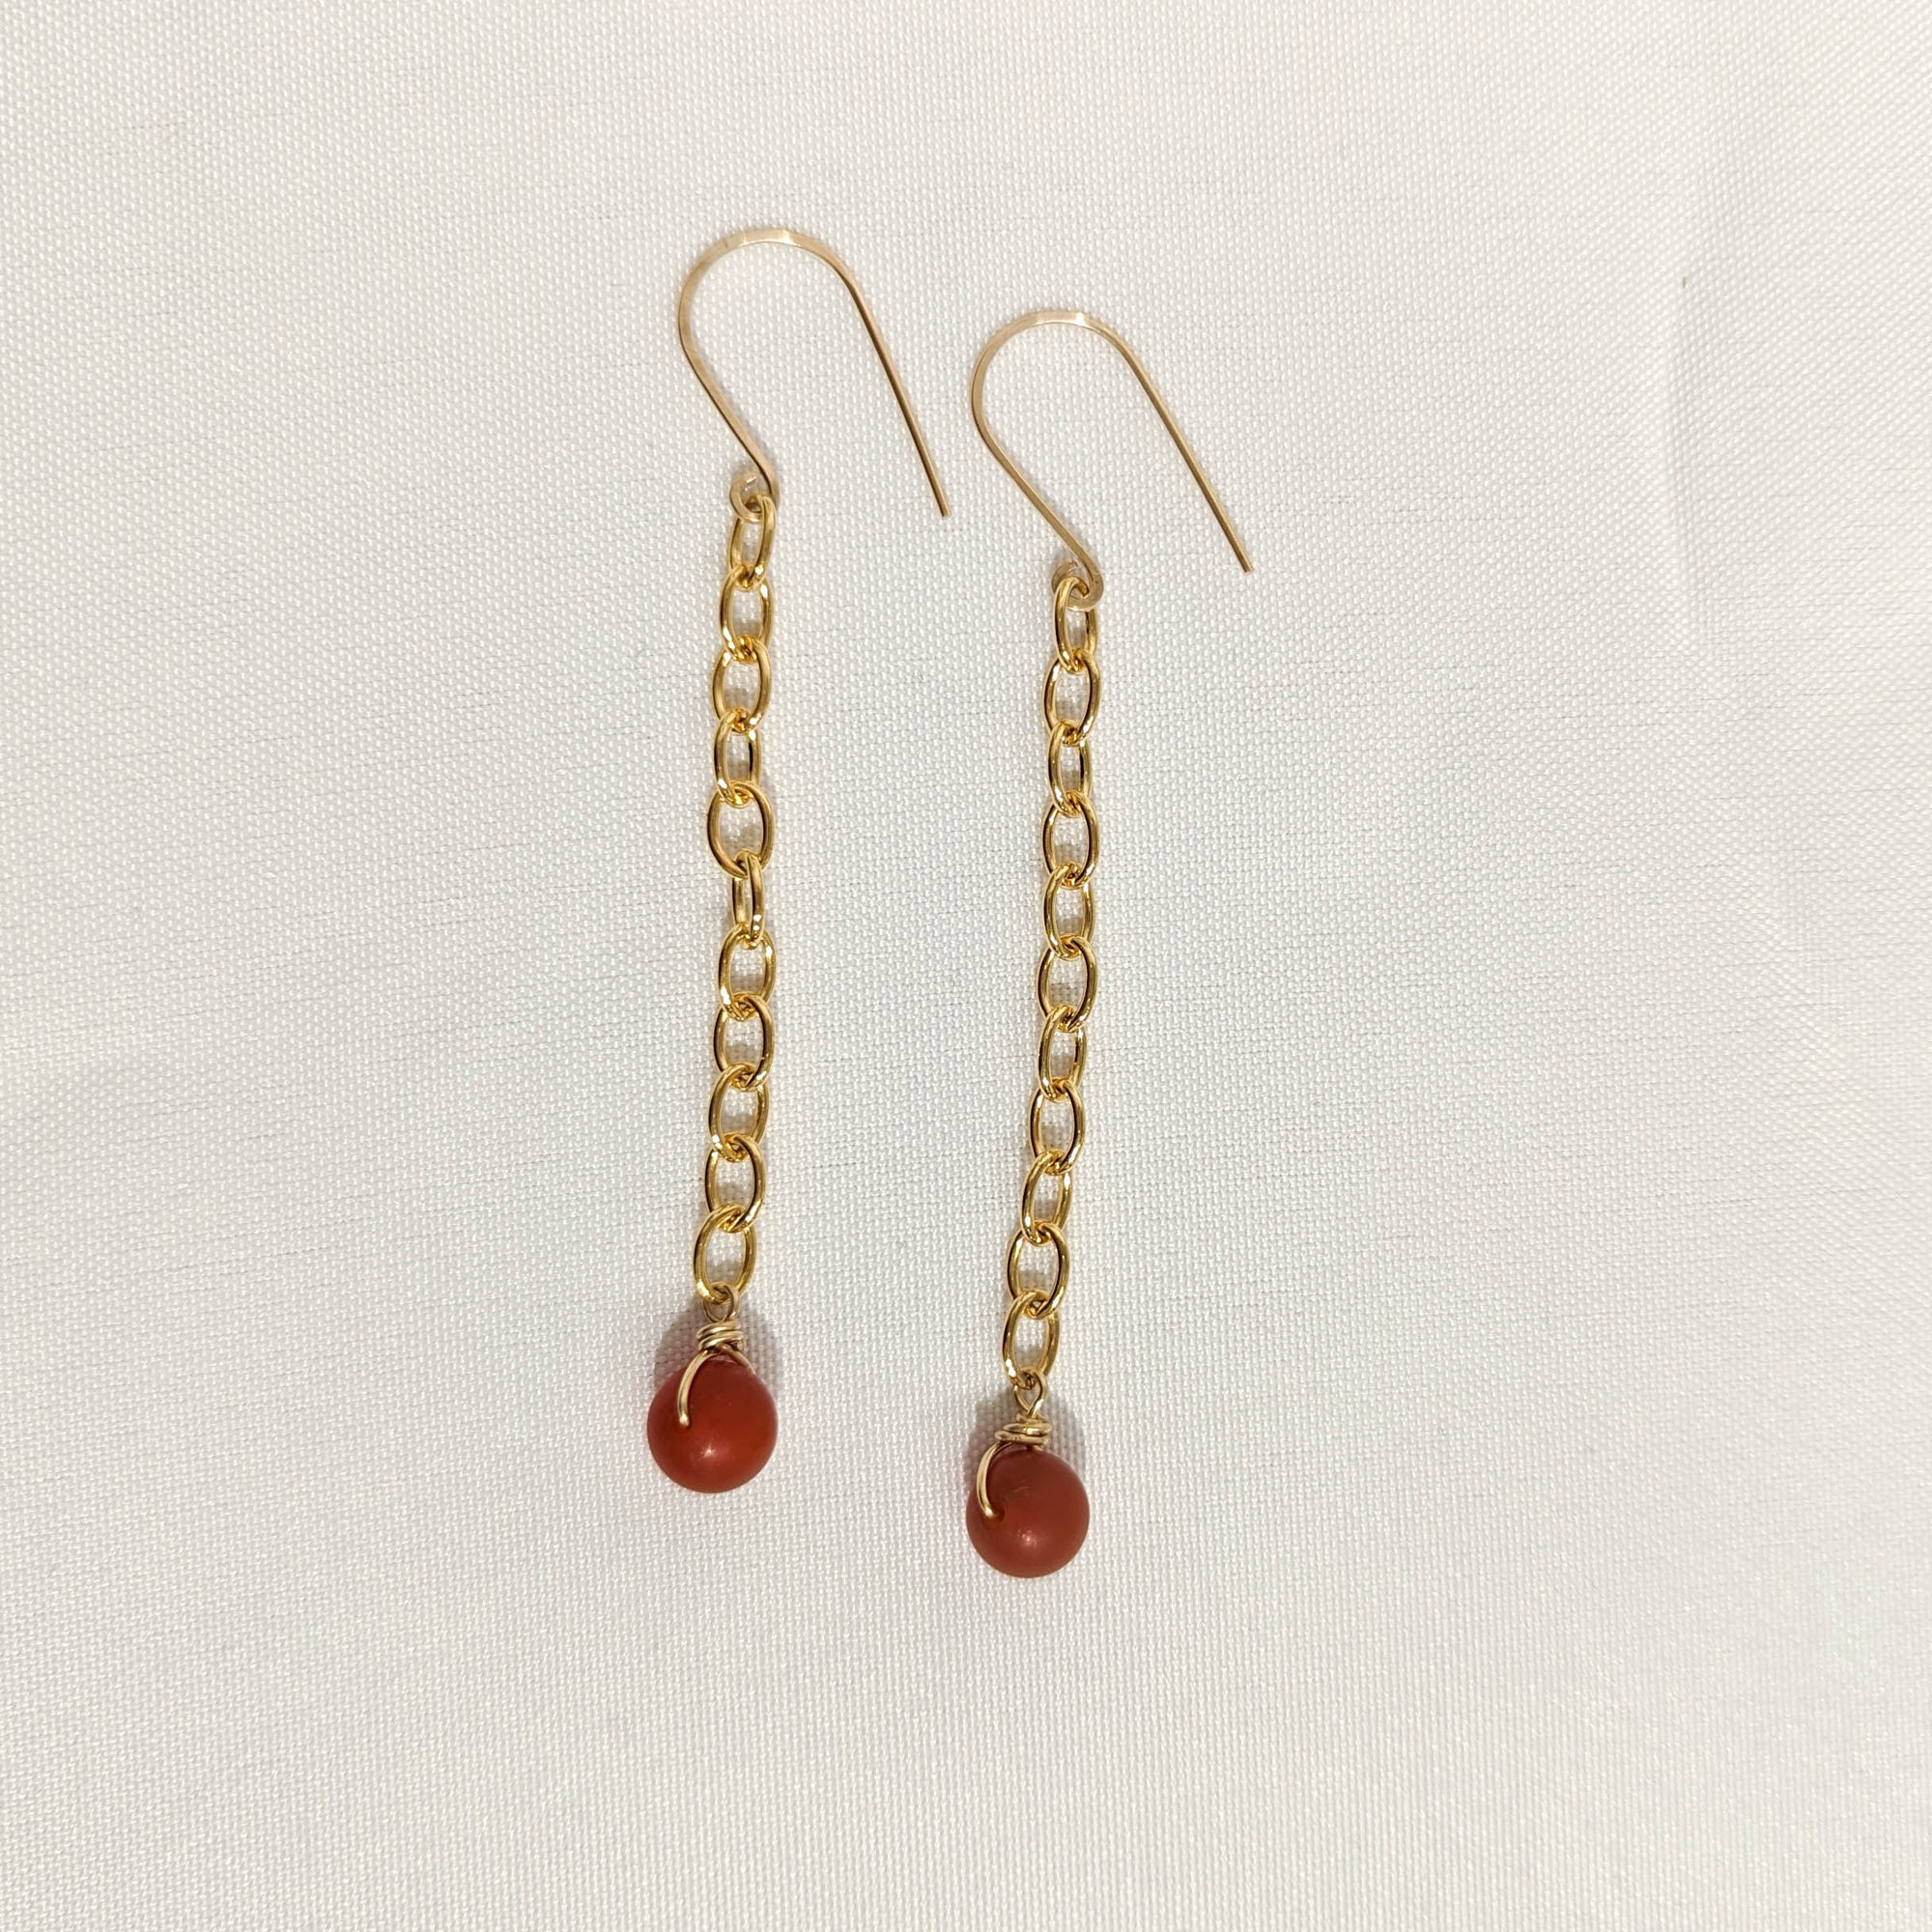 Red Carnelian Dangle Earrings